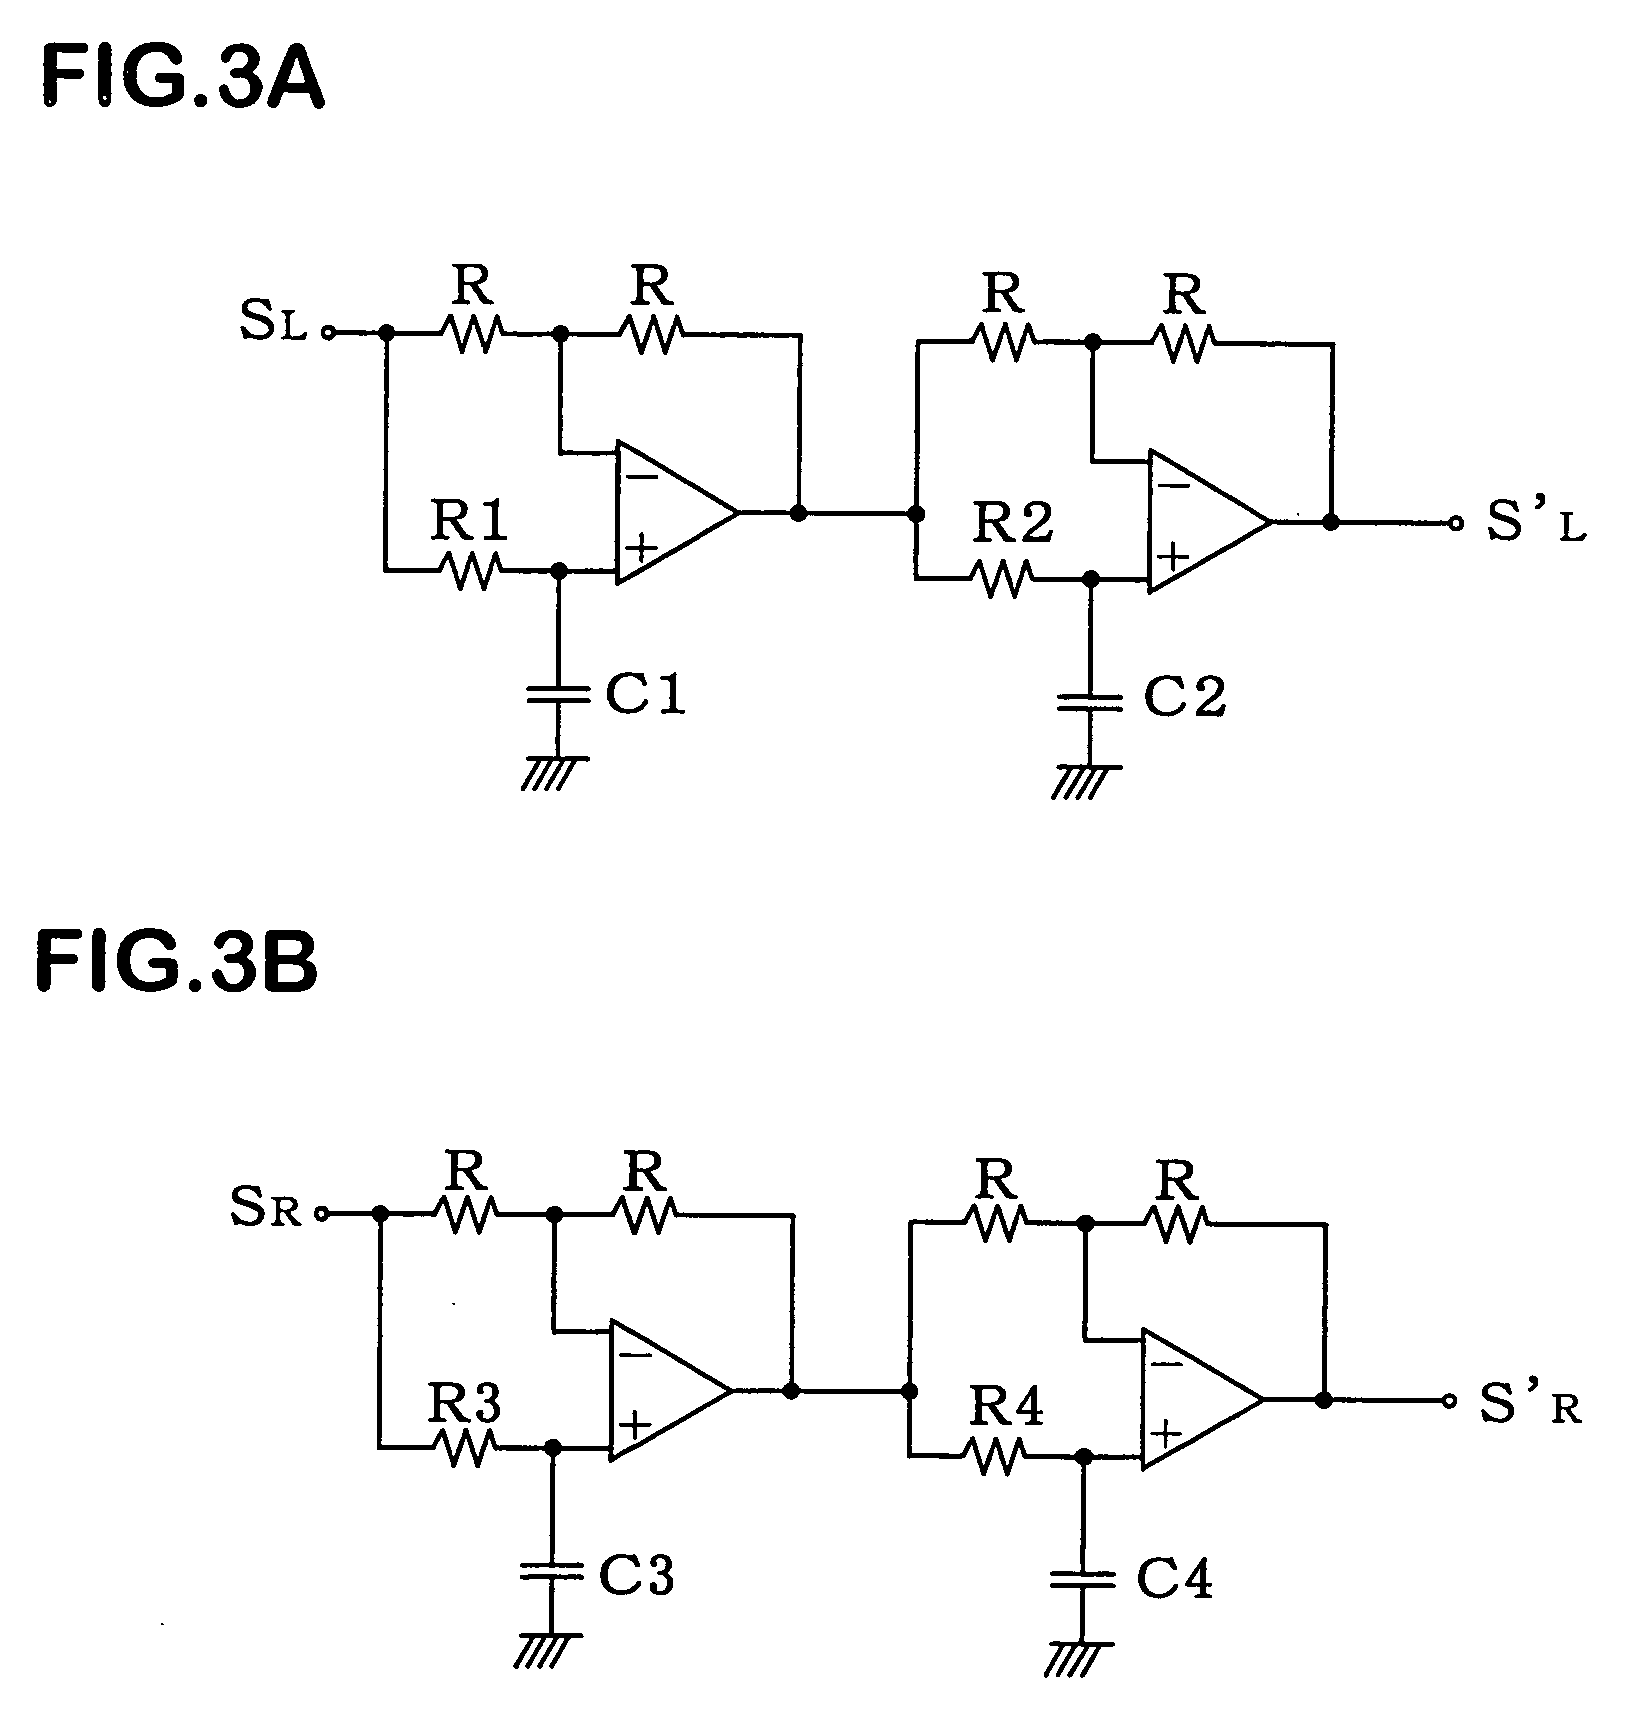 Audio signal processing circuit